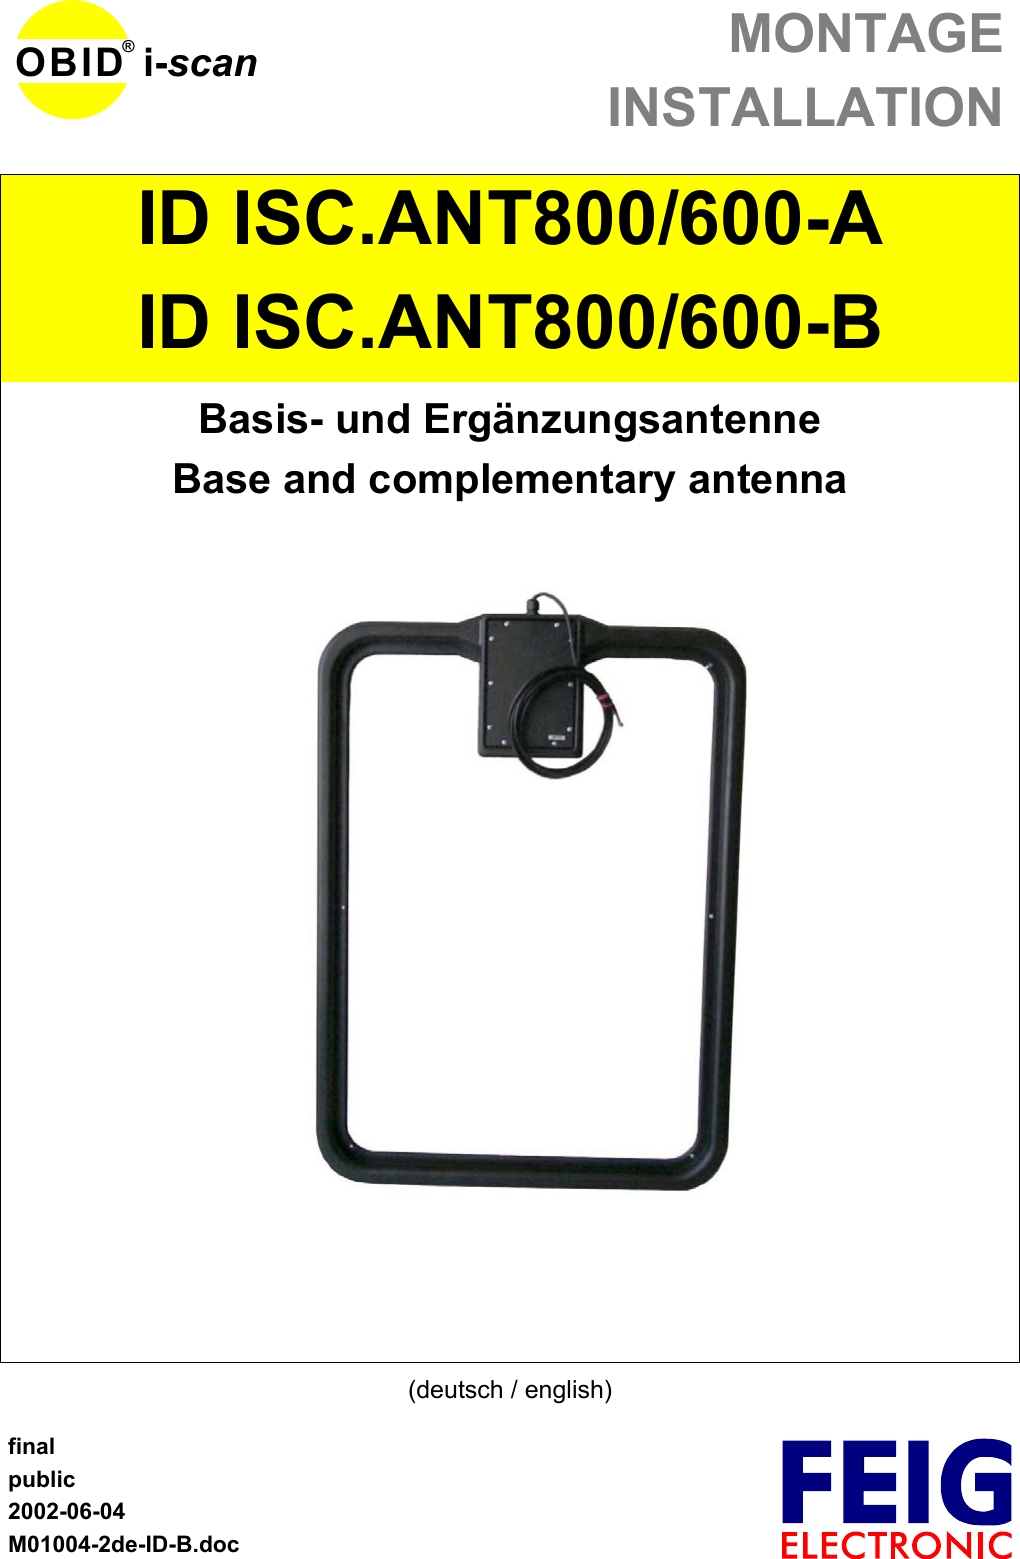 MONTAGEINSTALLATIONfinalpublic2002-06-04M01004-2de-ID-B.docOBID® i-scanID ISC.ANT800/600-AID ISC.ANT800/600-BBasis- und ErgänzungsantenneBase and complementary antenna(deutsch / english)